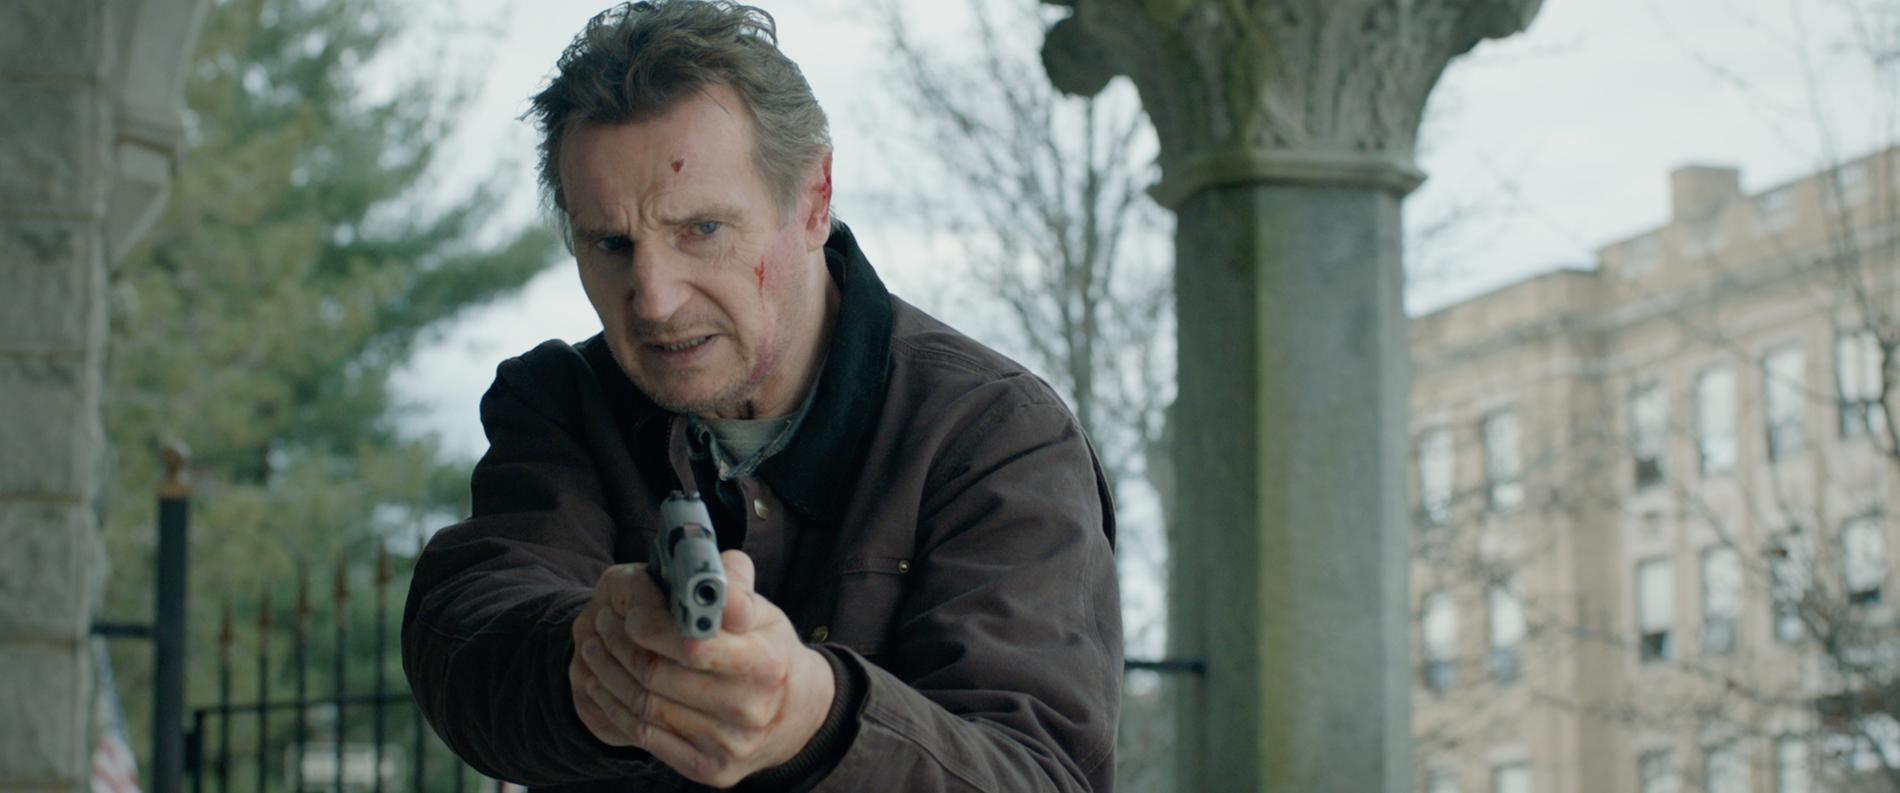 Liam Neeson i ”Honest thief”.